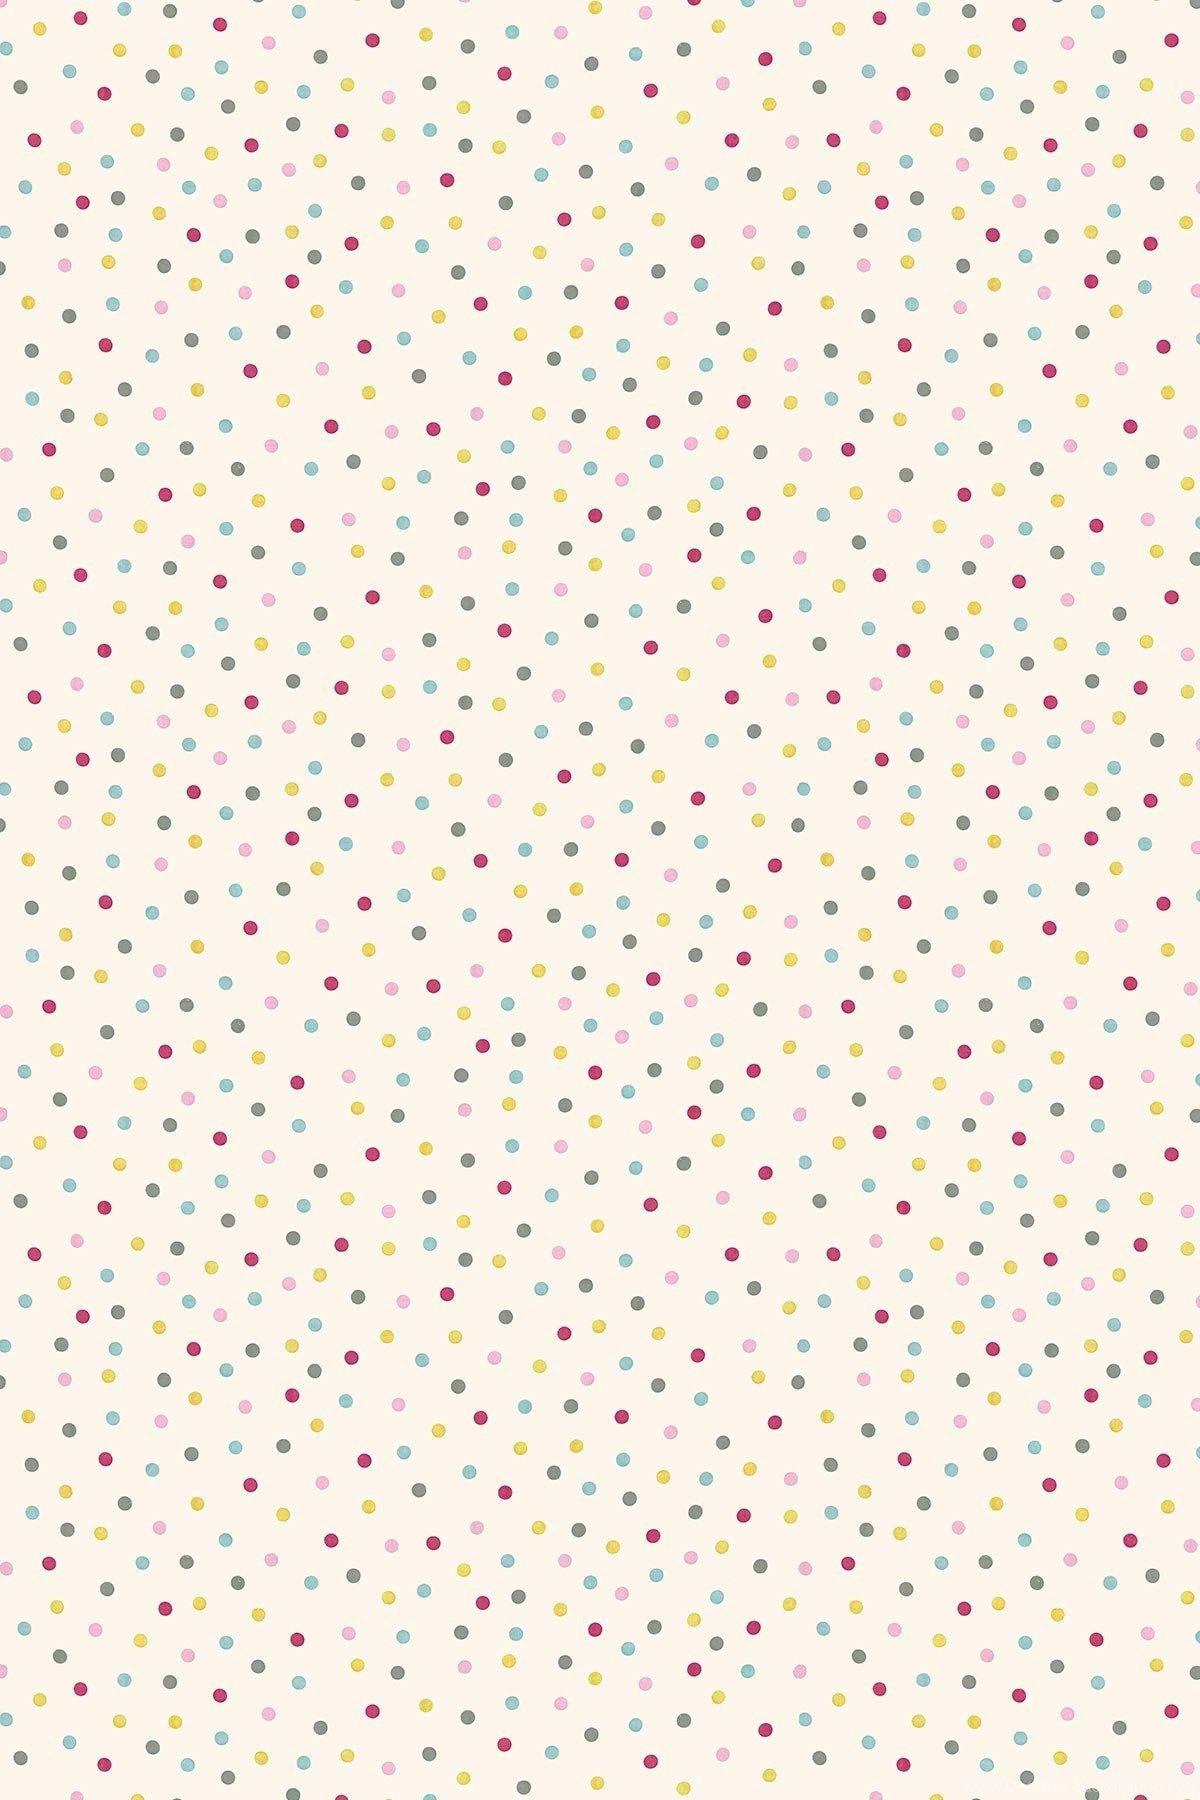 Gold Polka Dots Background Gold And Pink Polka Dots Wallpaper